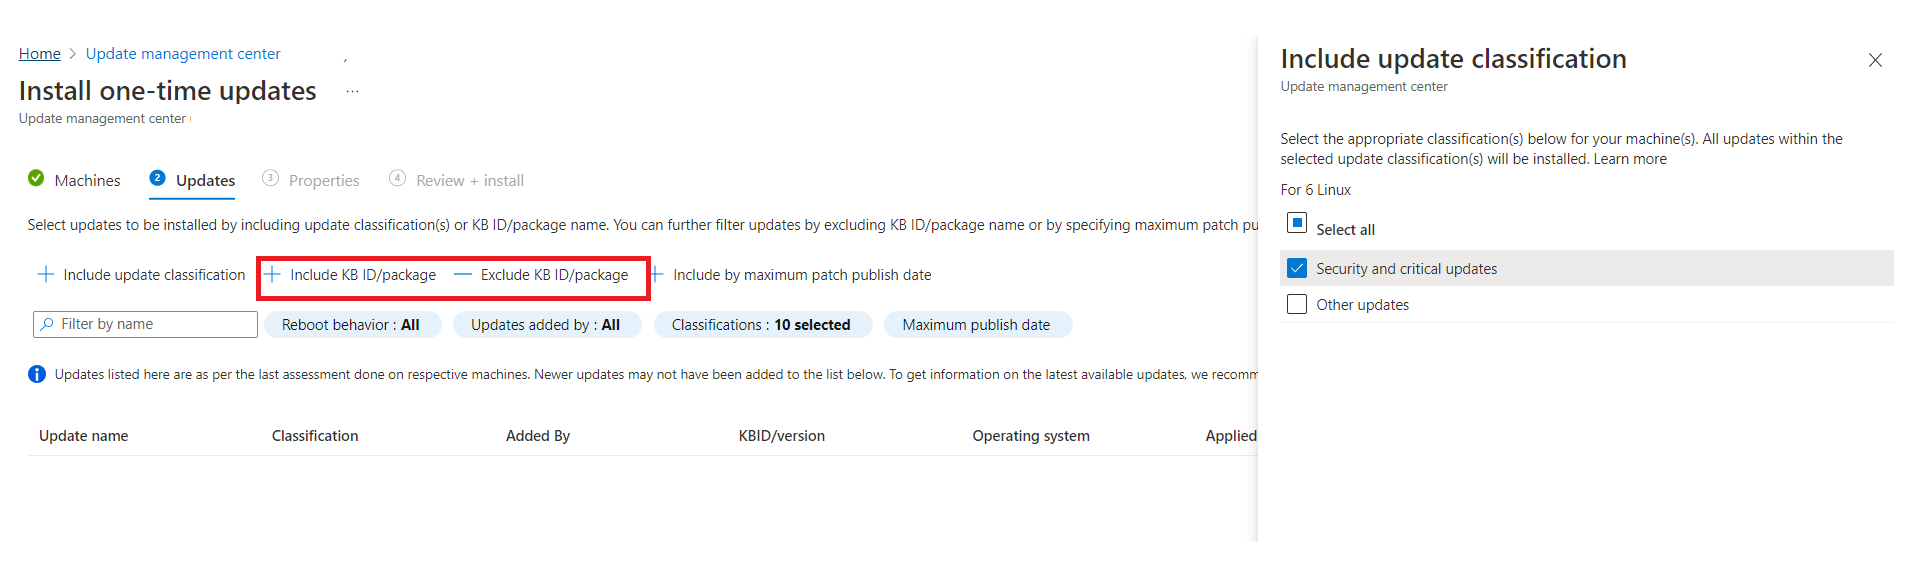 Zrzut ekranu przedstawiający zmianę kryteriów wyboru aktualizacji konfiguracji konserwacji.